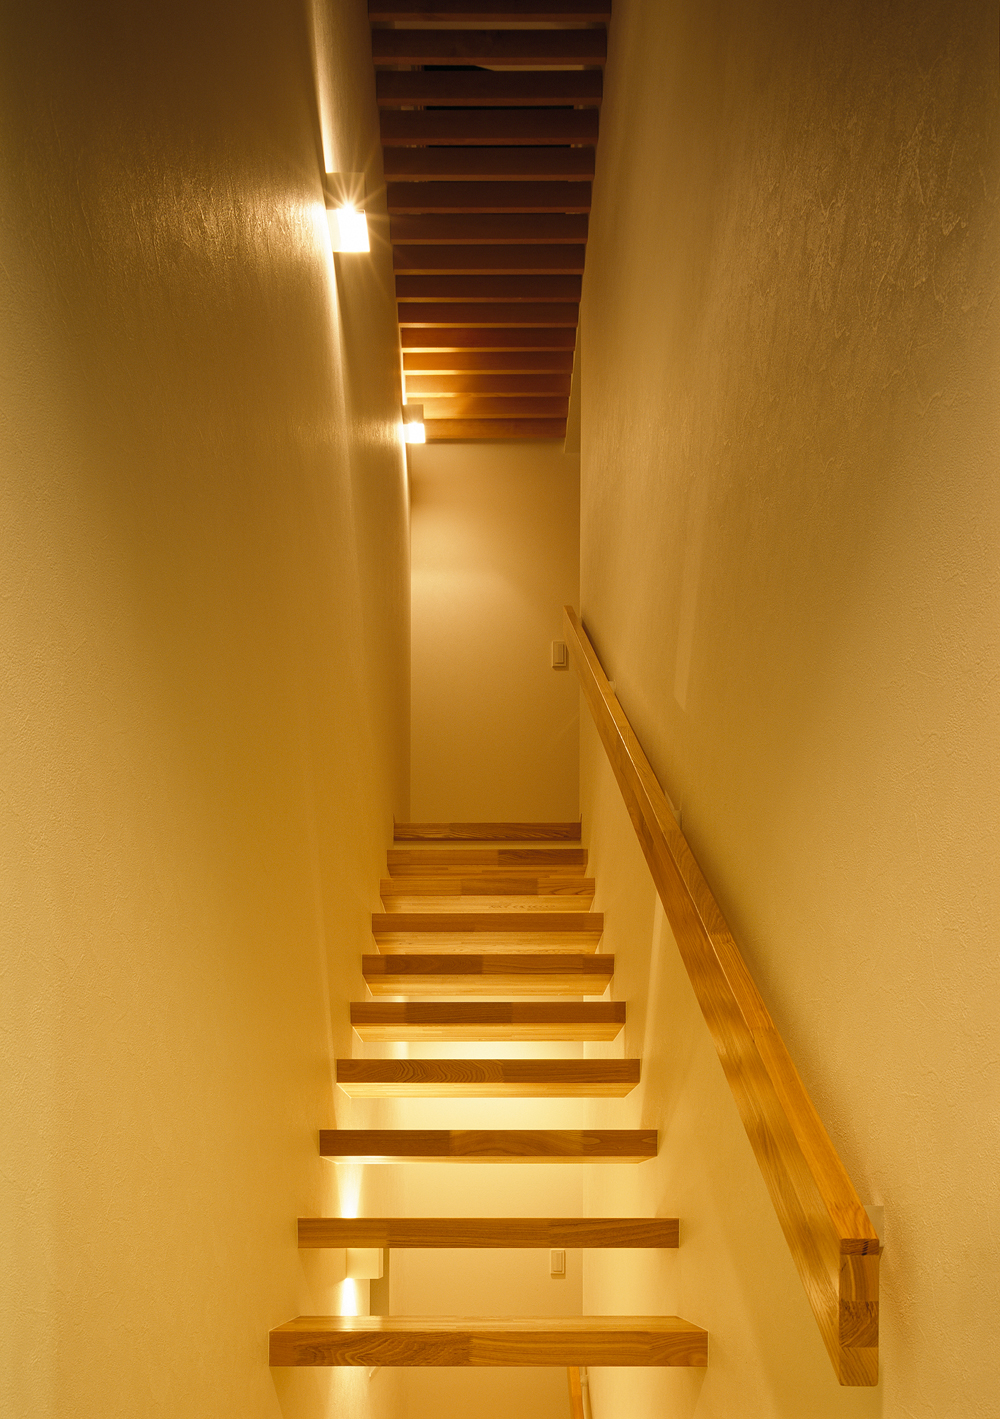 蹴上をなくし美しい光が抜ける、造形物のような階段